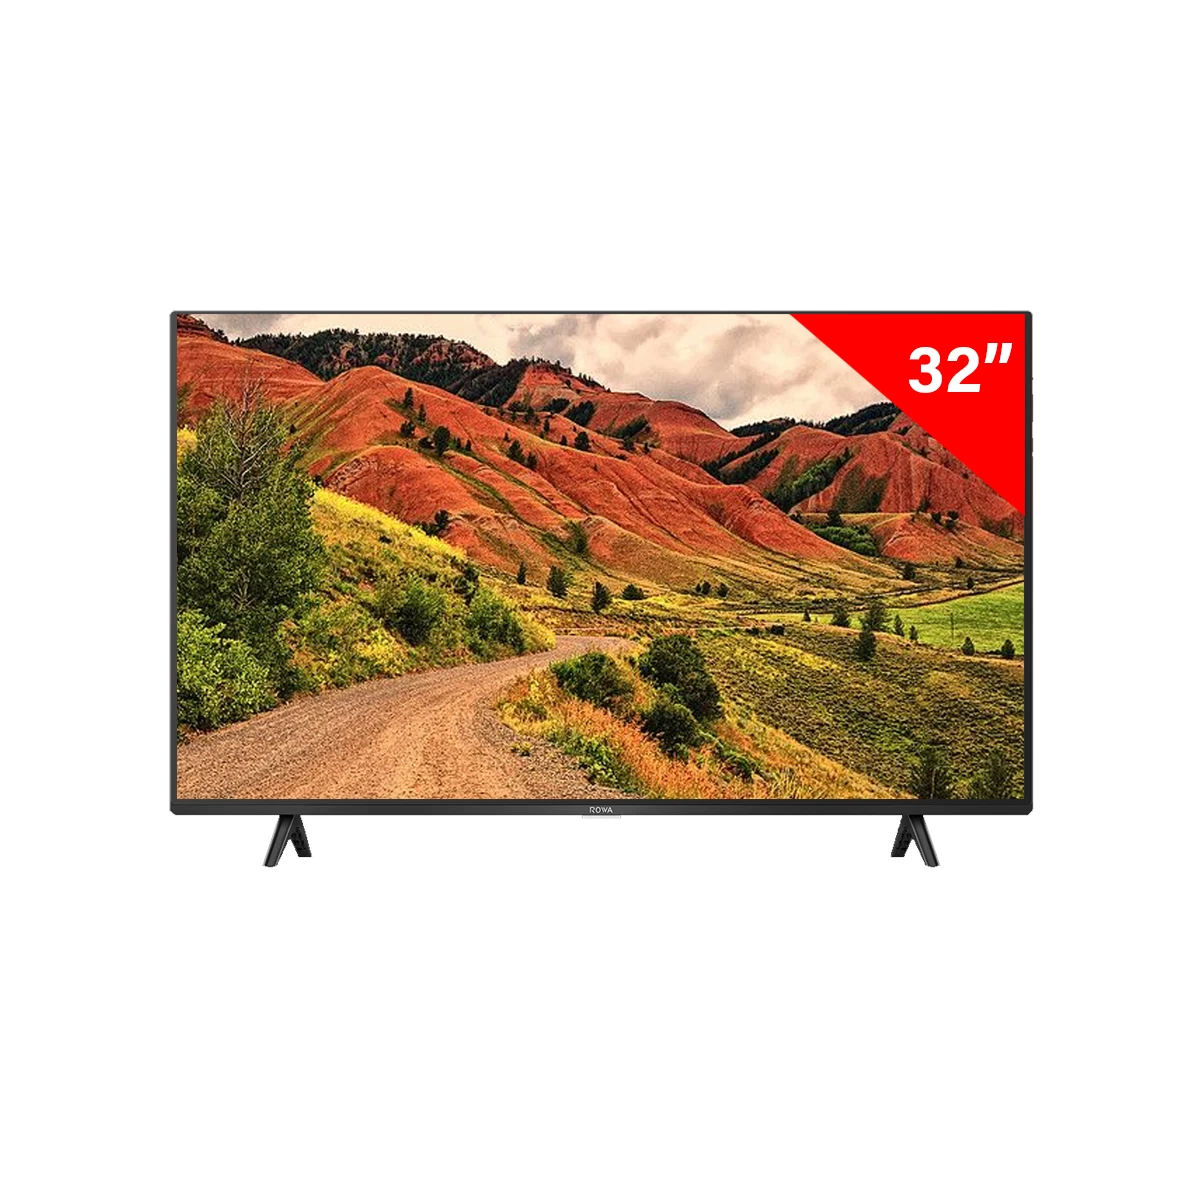 ROWA 32 inch Smart TV | 32S52